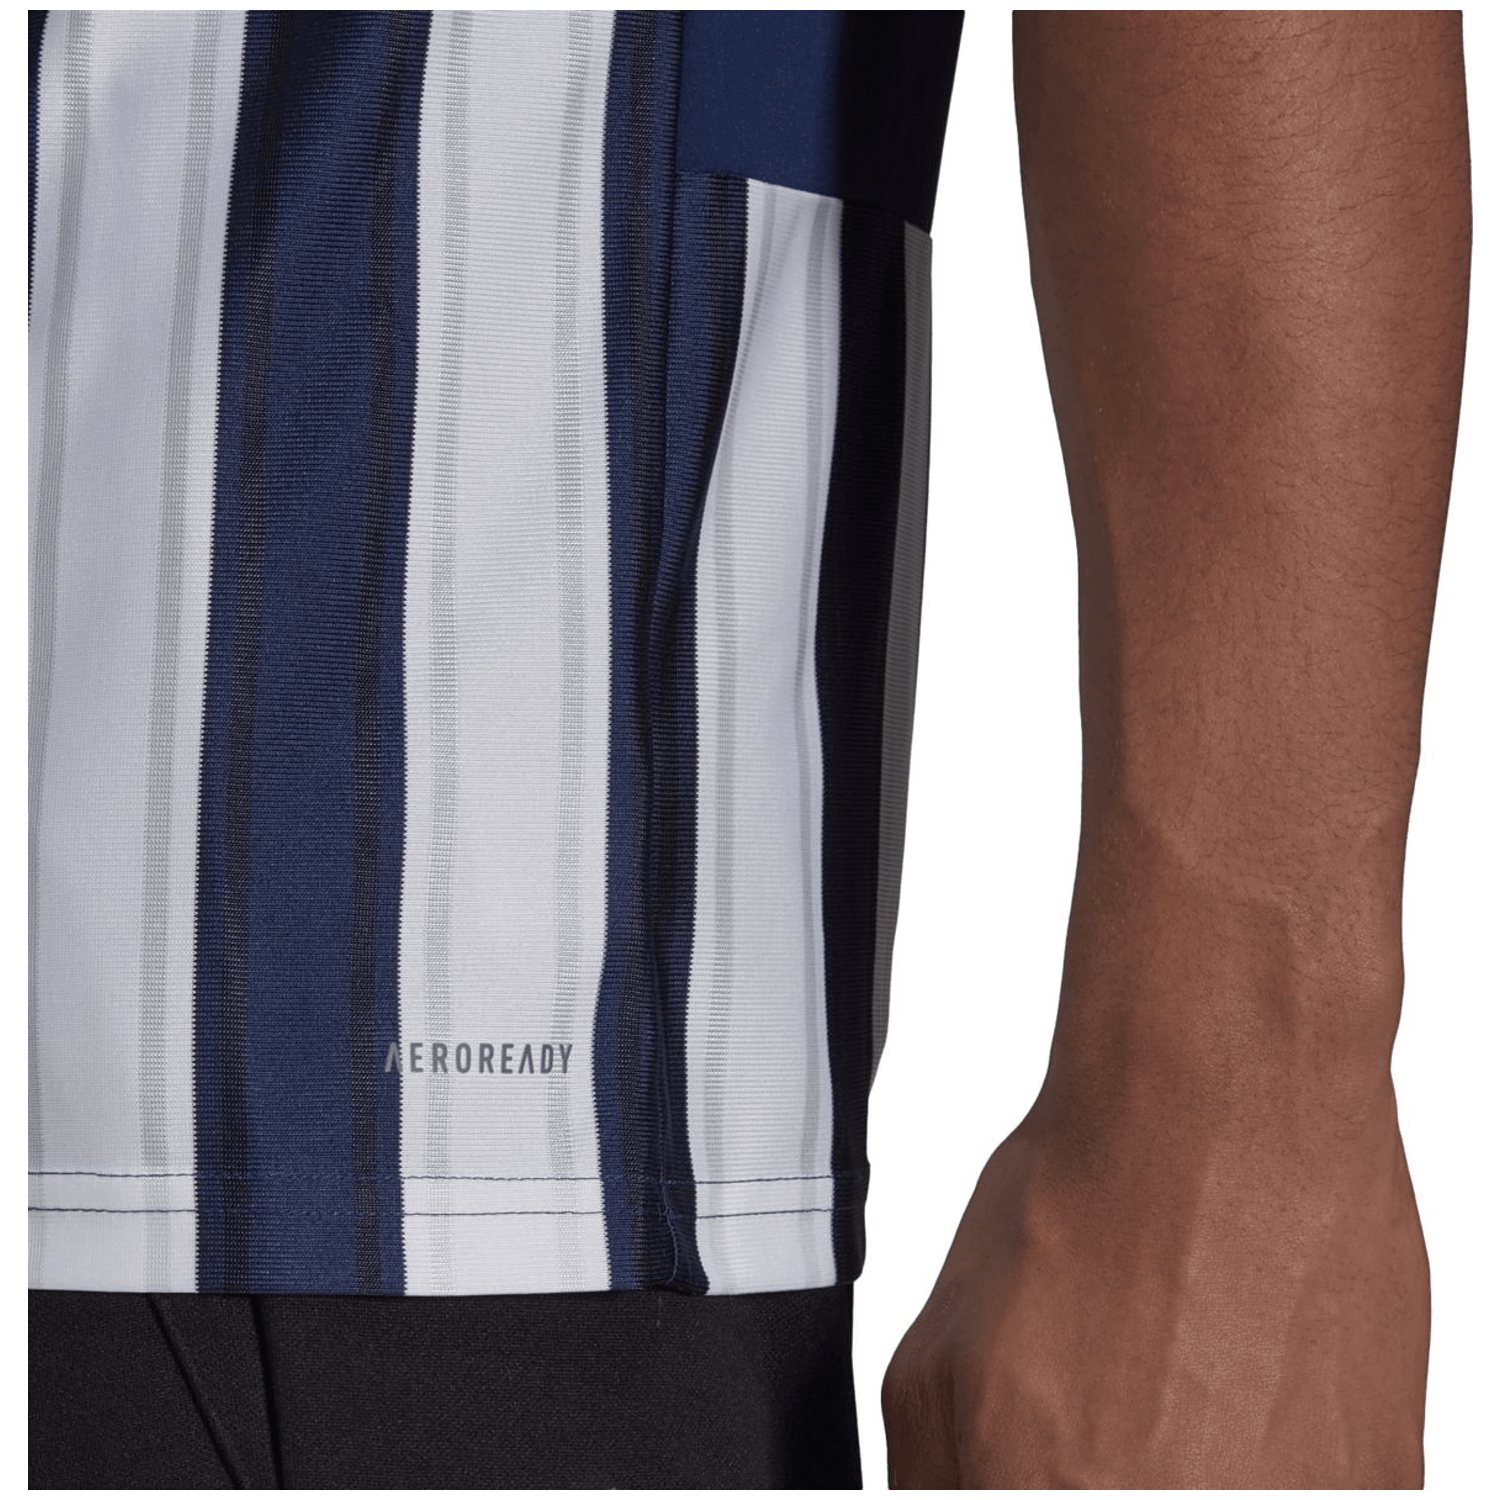 Adidas Striped 21 Trikot Herren